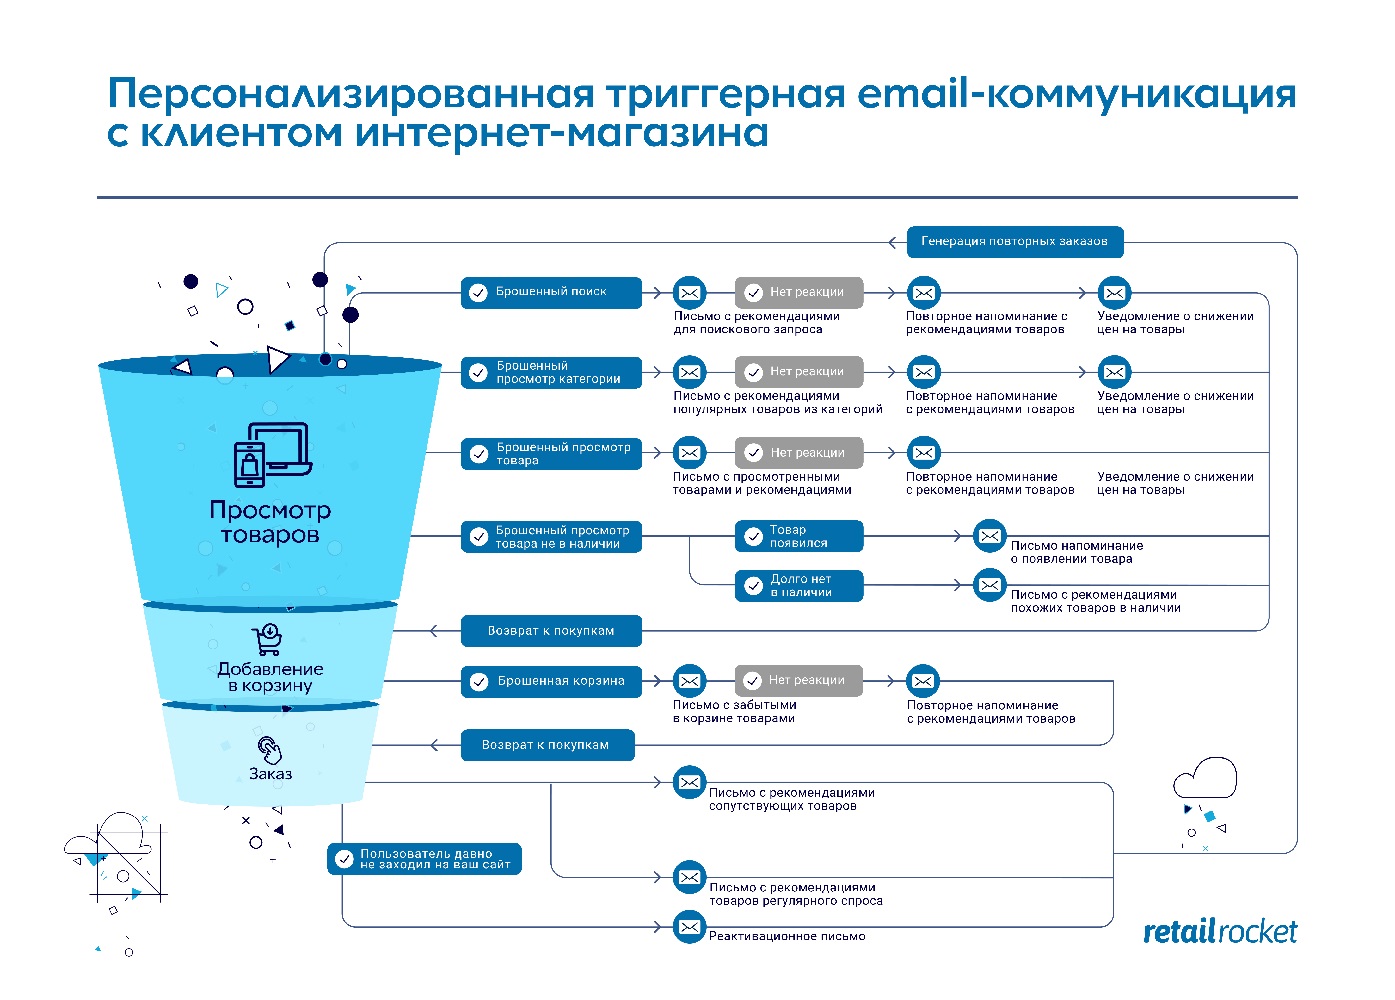 Как мотивировать к повторным покупкам с помощью триггерной коммуникации: кейс cheese-cake.ru